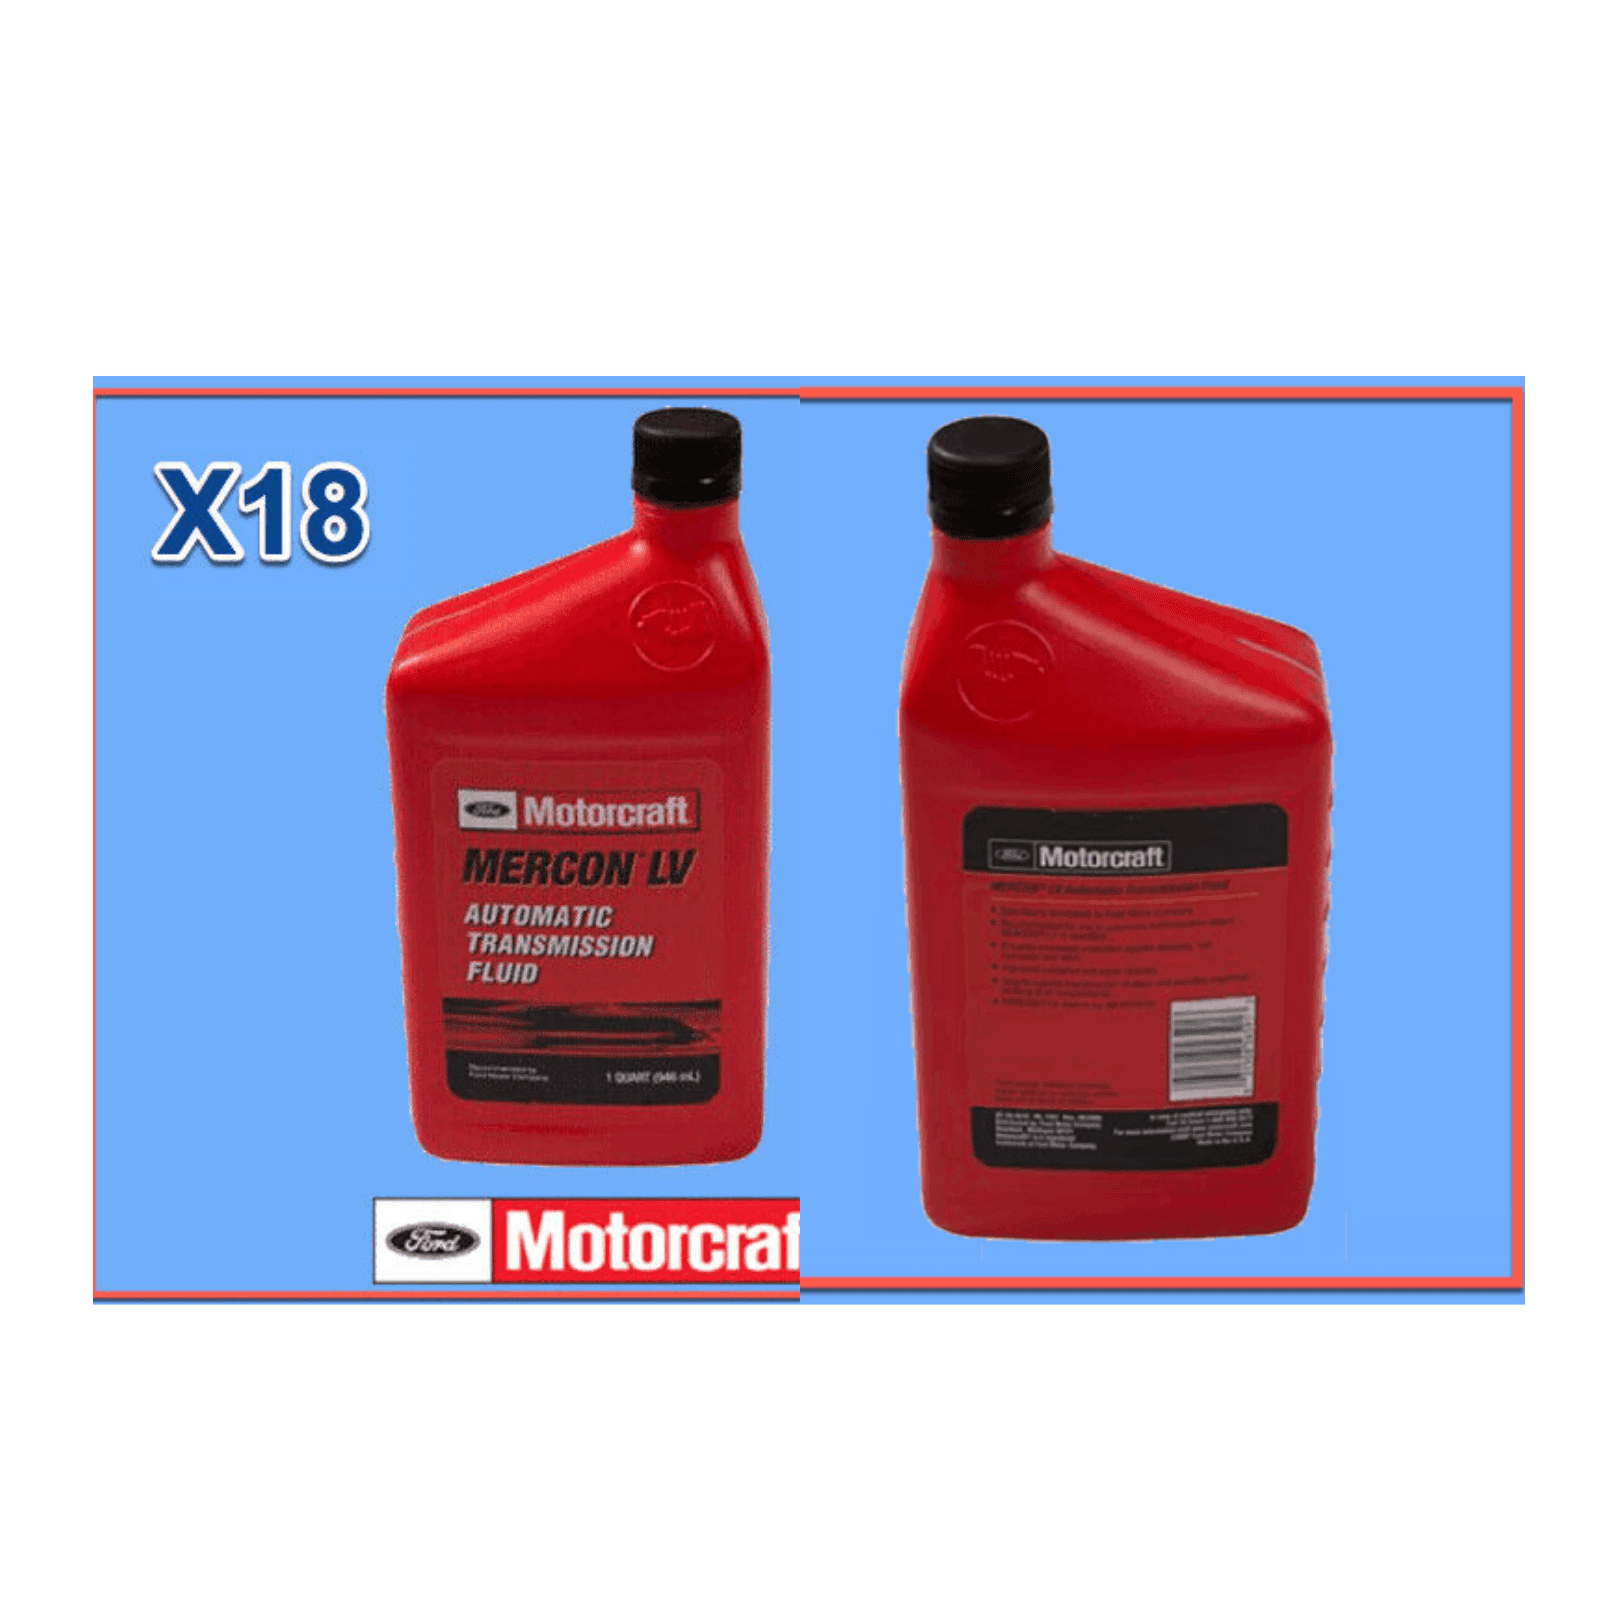 MOTORCRAFT - Mercon LV - 5 Quarts - Part Number: XT-10-5Q3LV - Bma